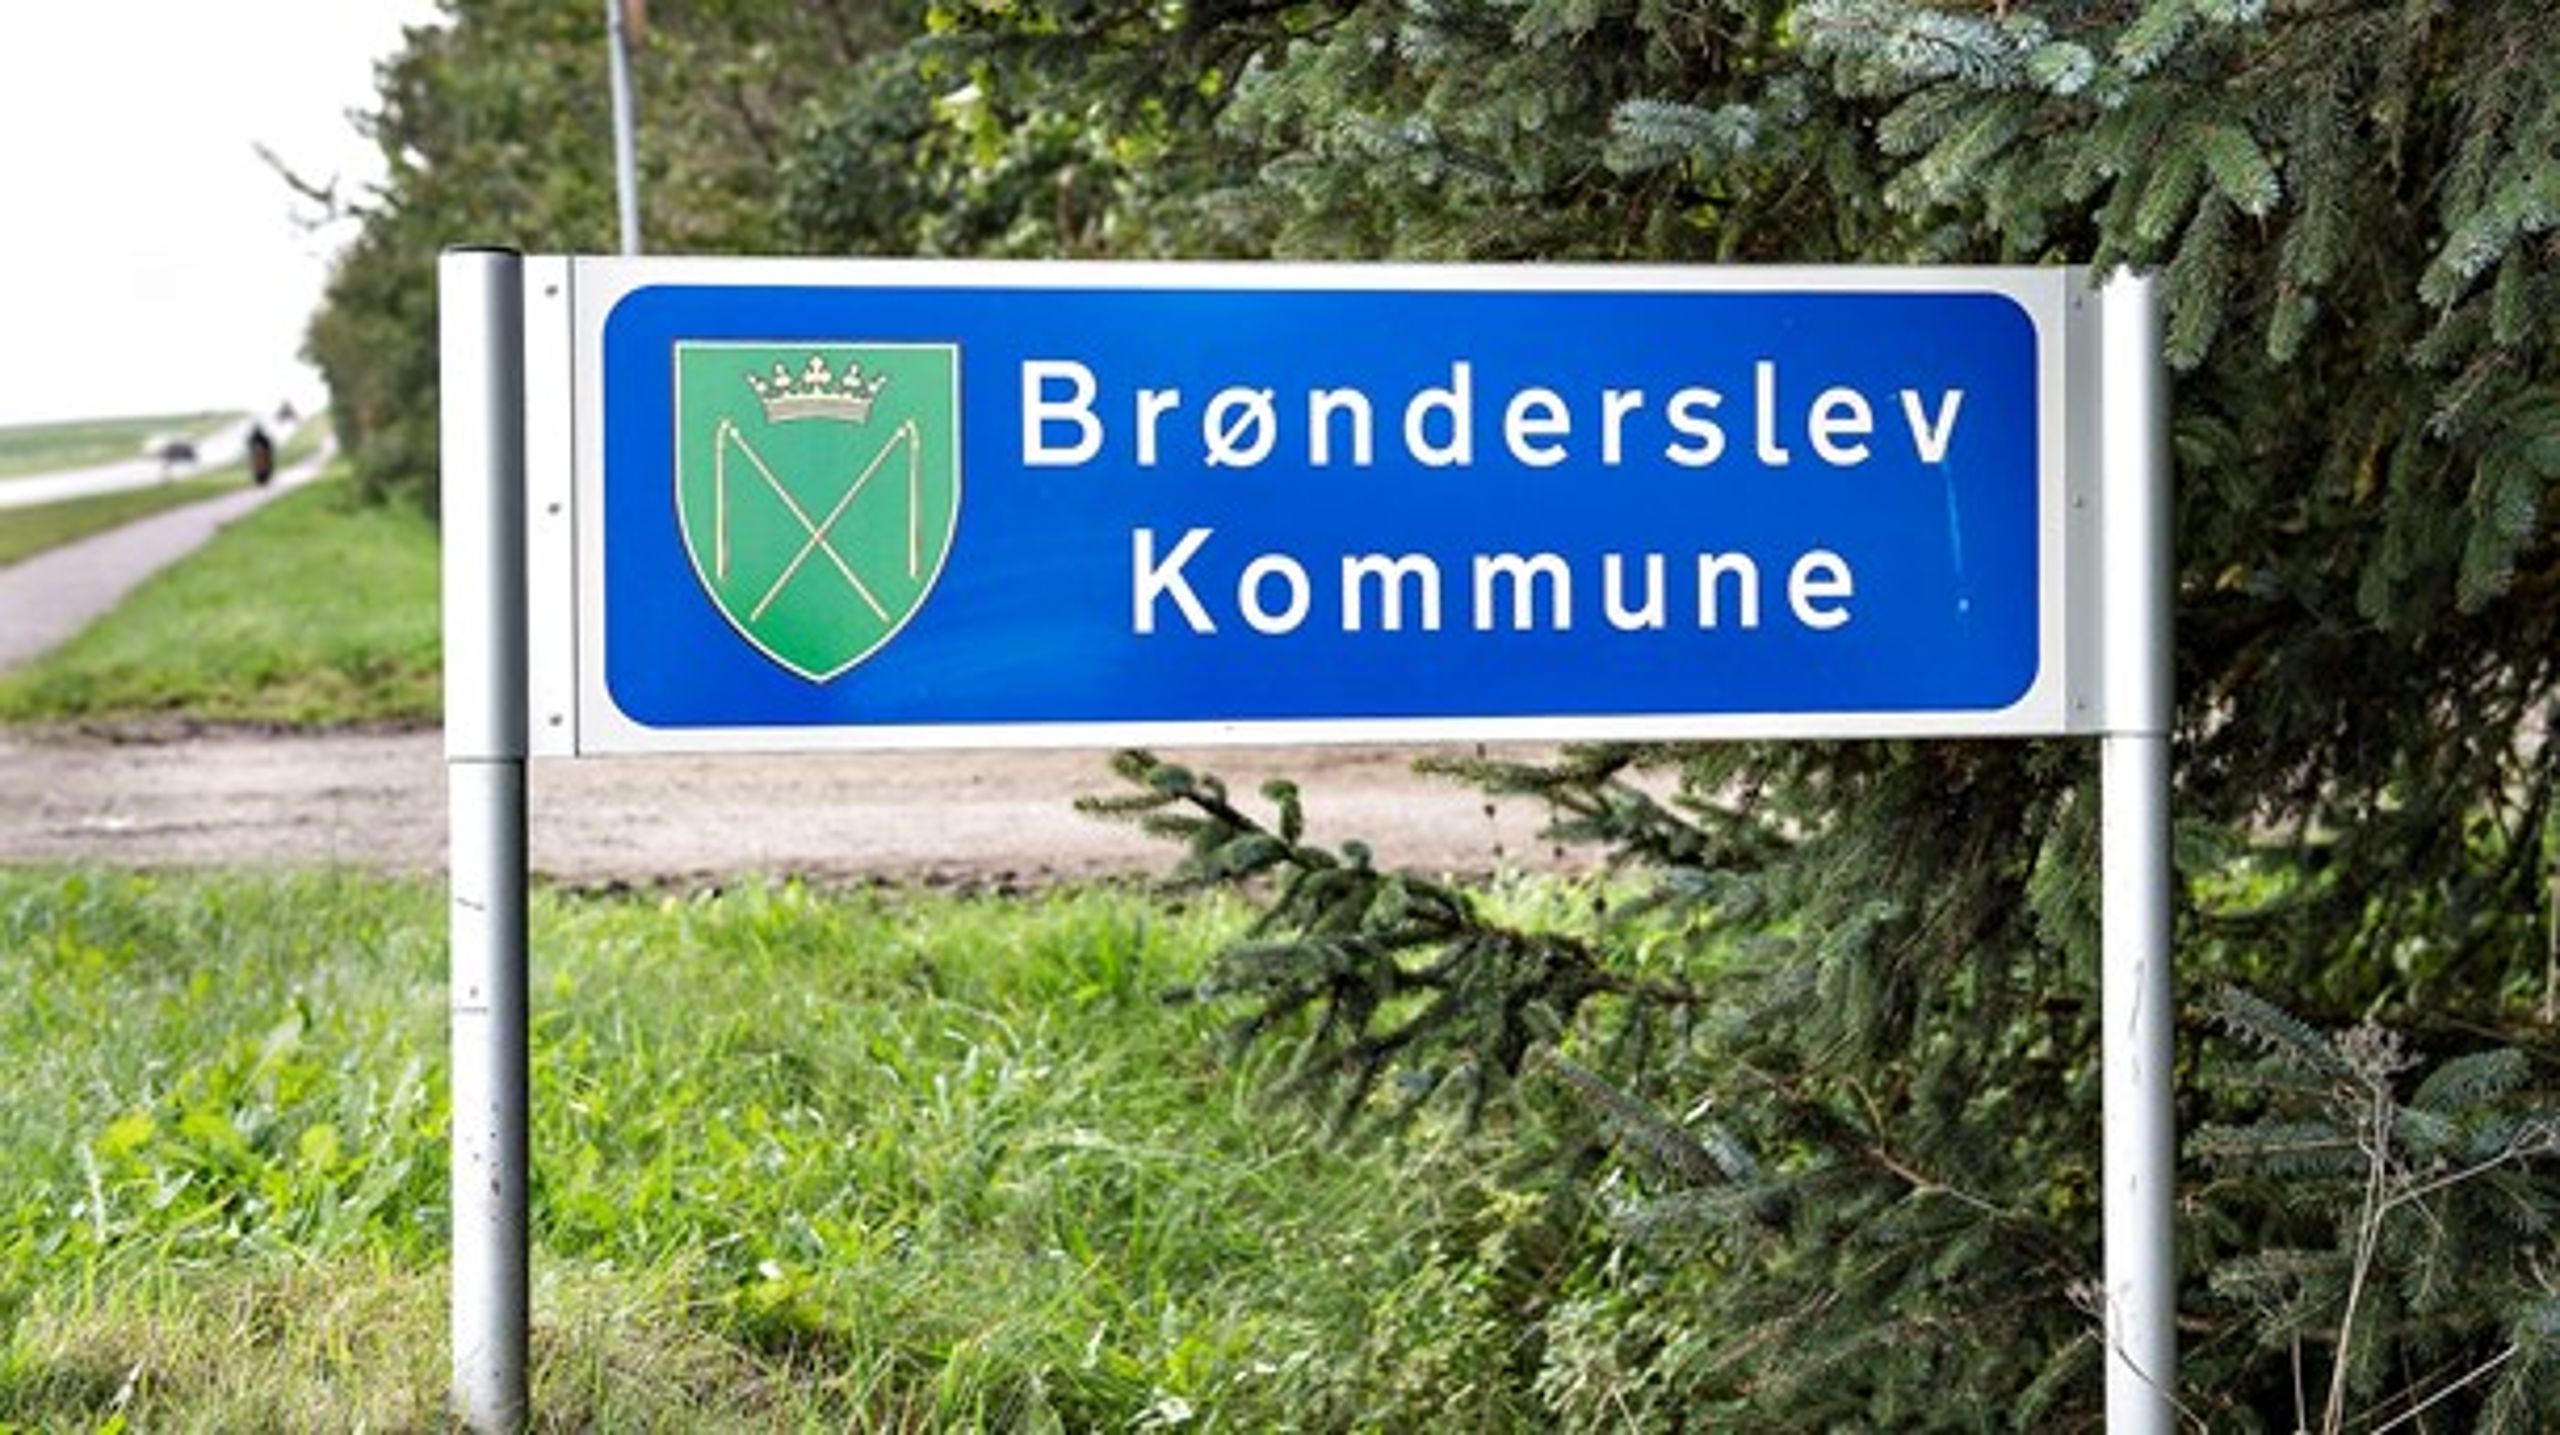 37 stillinger blev flyttet til Styrelsen for Arbejdsmarked og Rekruttering i Brønderslev ved regeringens første udflytningsrunde i oktober 2015.